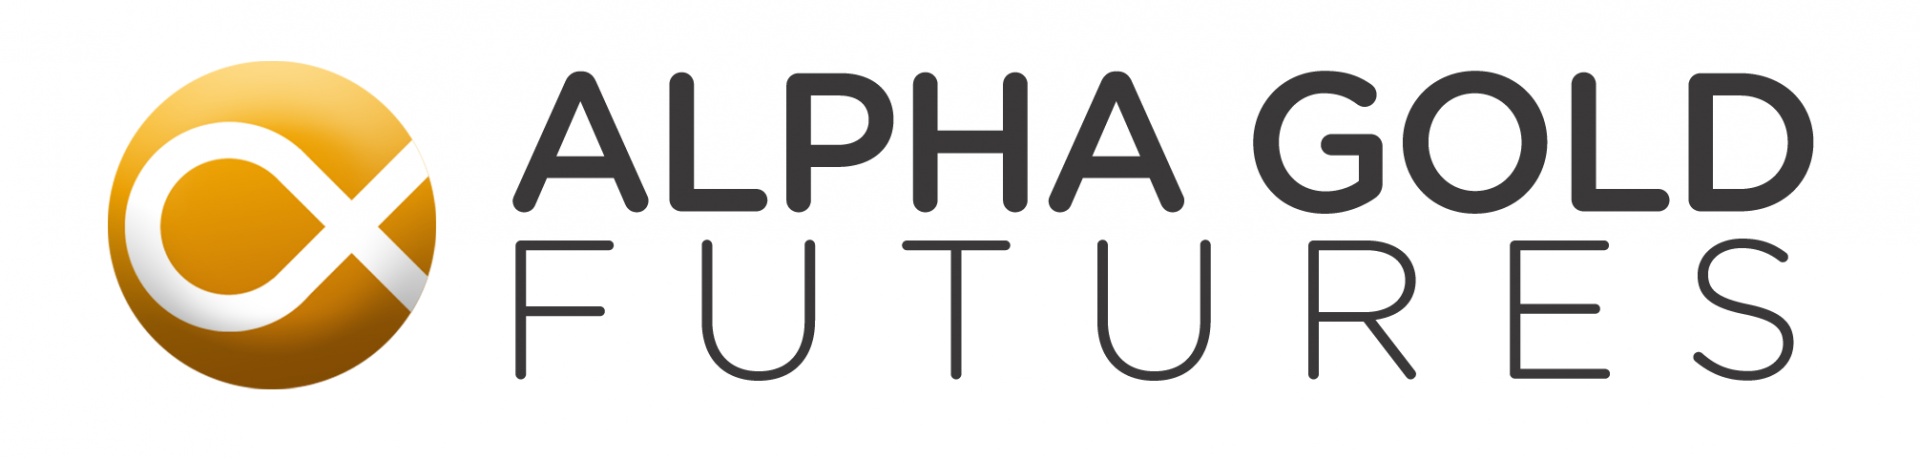 Alpha Gold Futures Co., Ltd